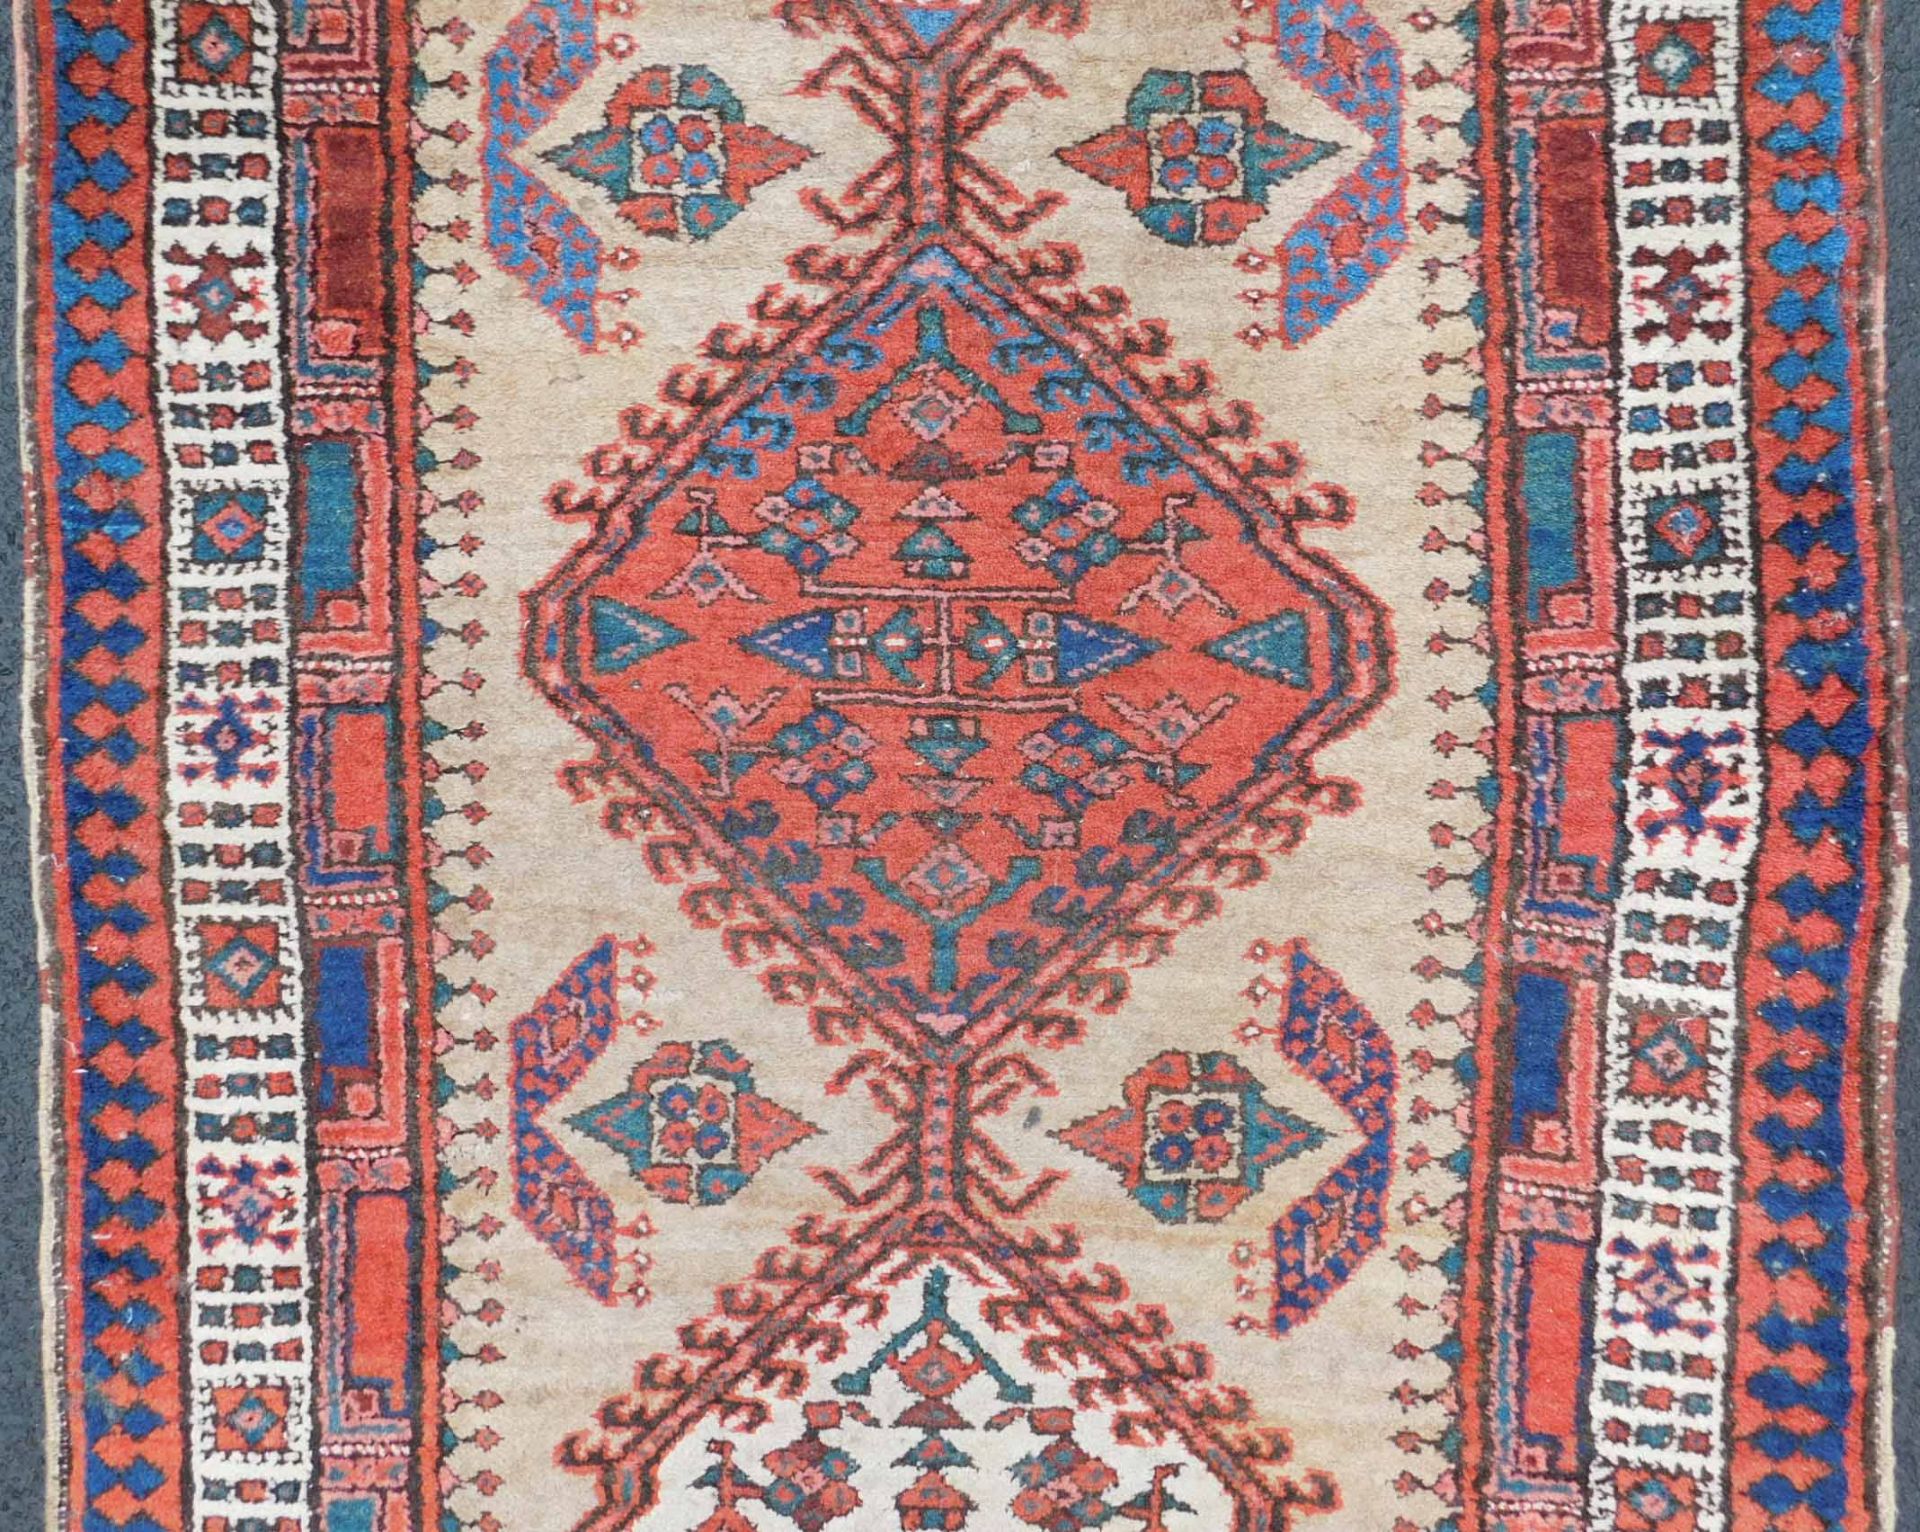 Meshkin Persian carpet. Gallery. Iran. Around 80 - 120 years old. - Bild 4 aus 6